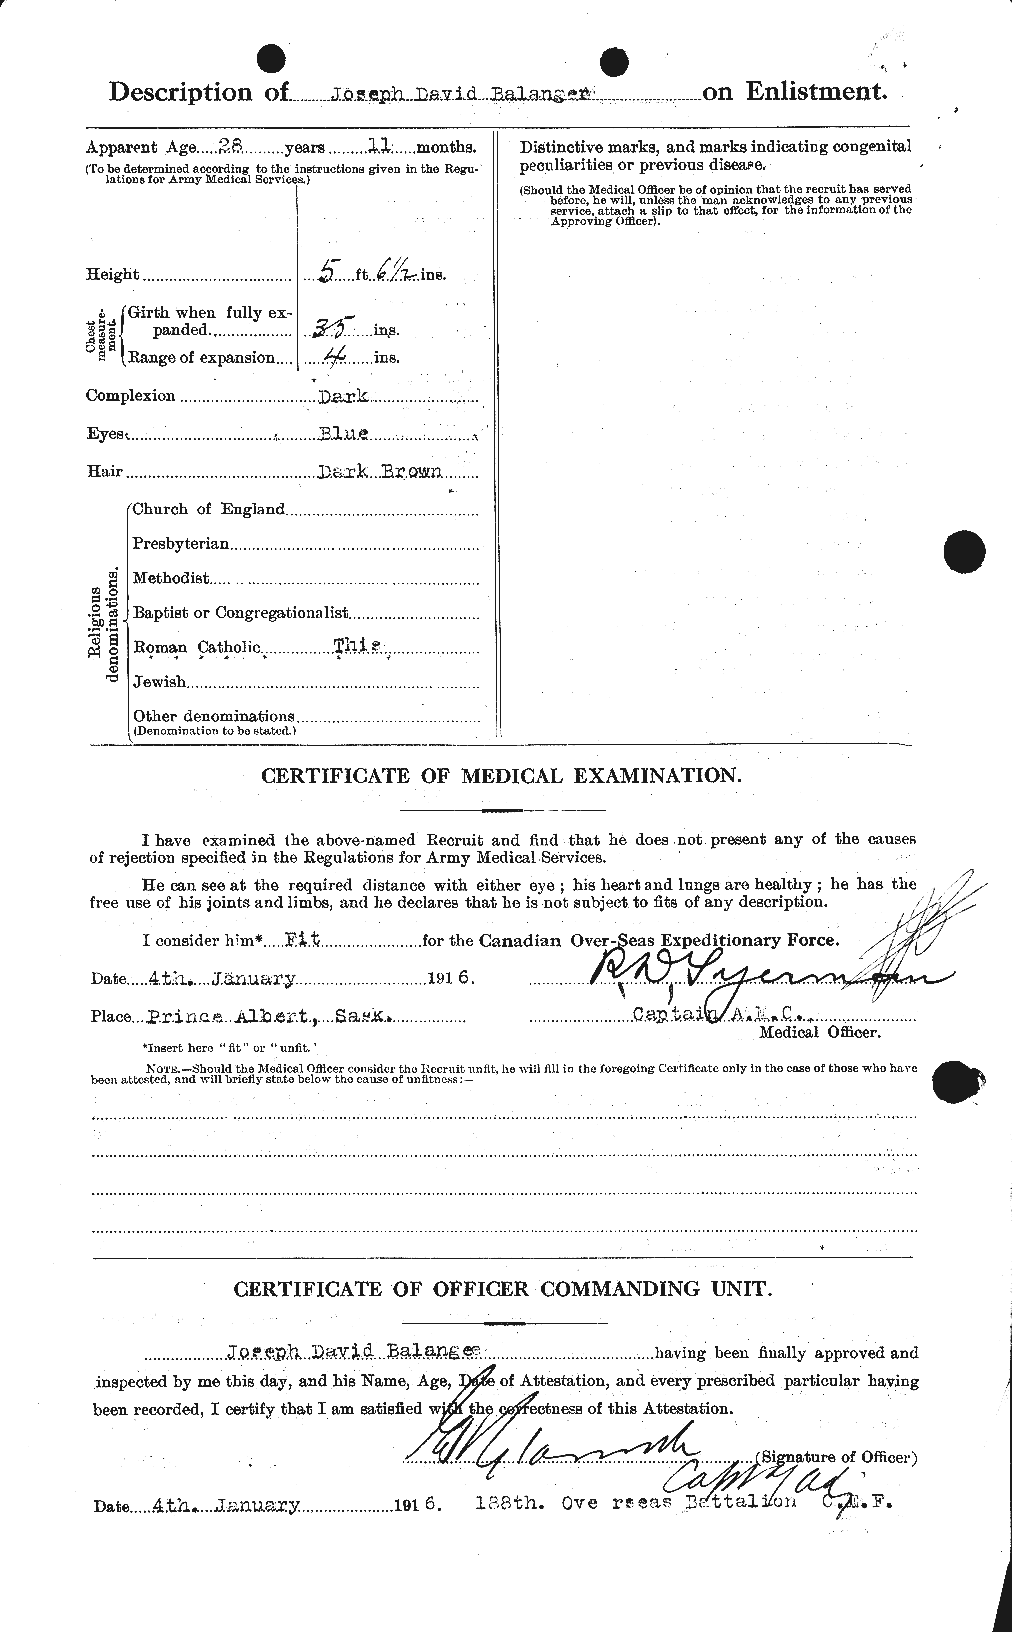 Dossiers du Personnel de la Première Guerre mondiale - CEC 232731b